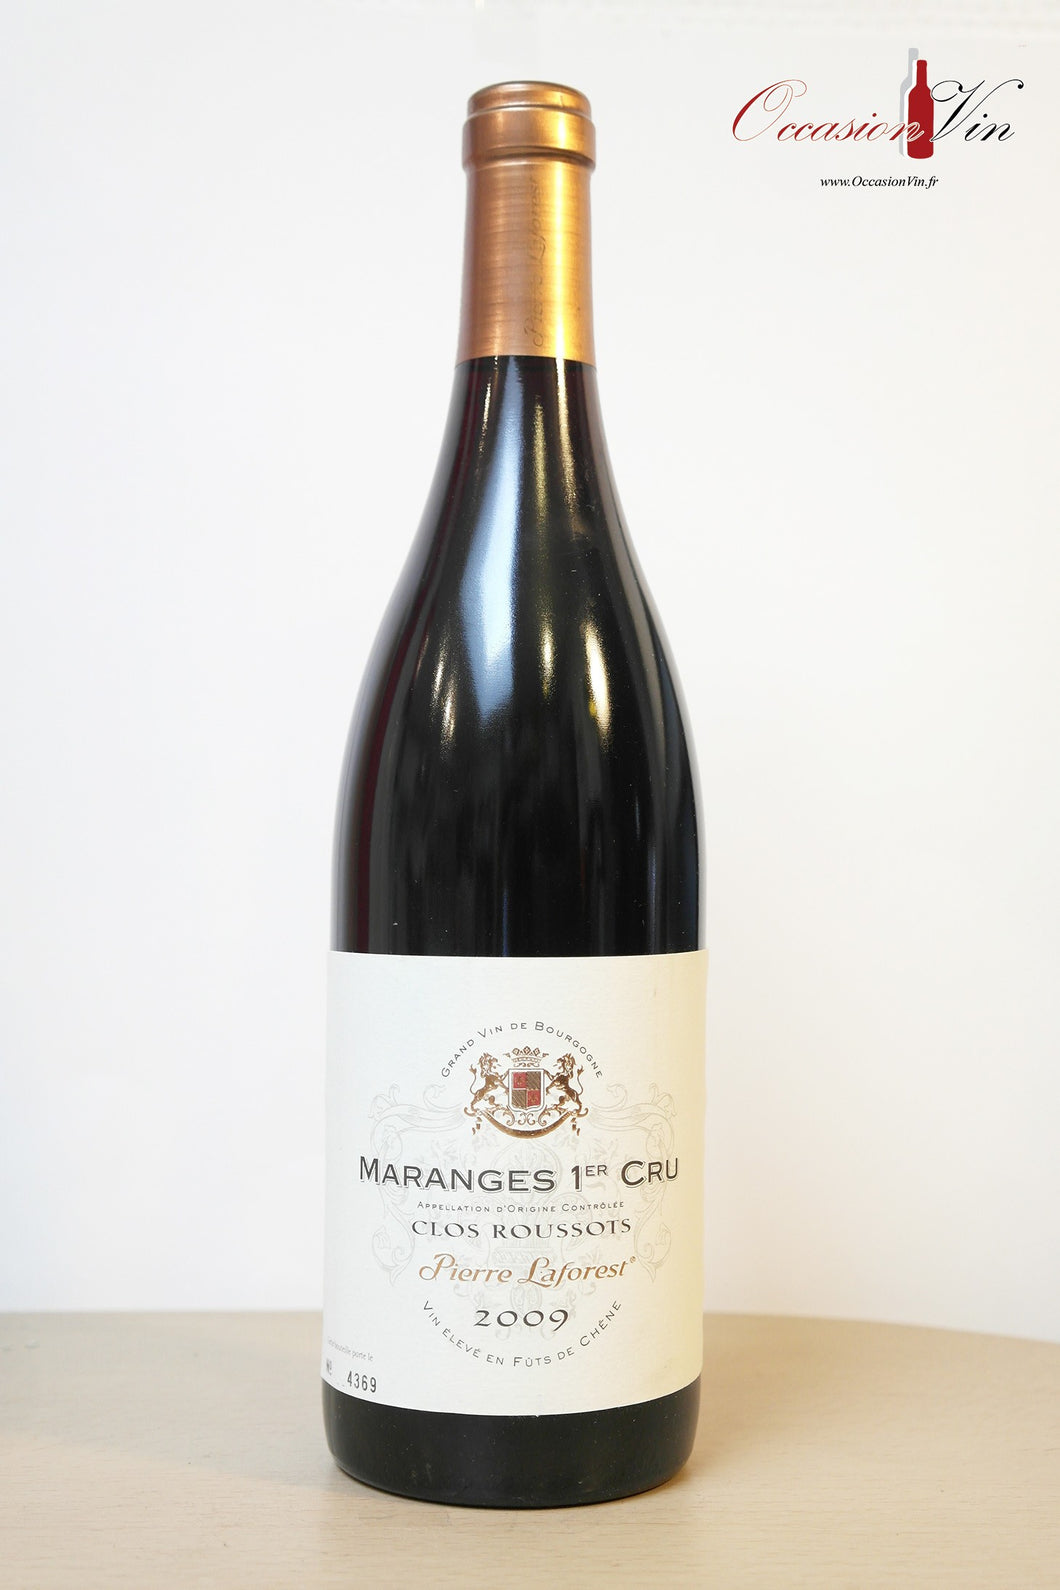 Clos Roussots Maranges 1er Cru Vin 2009